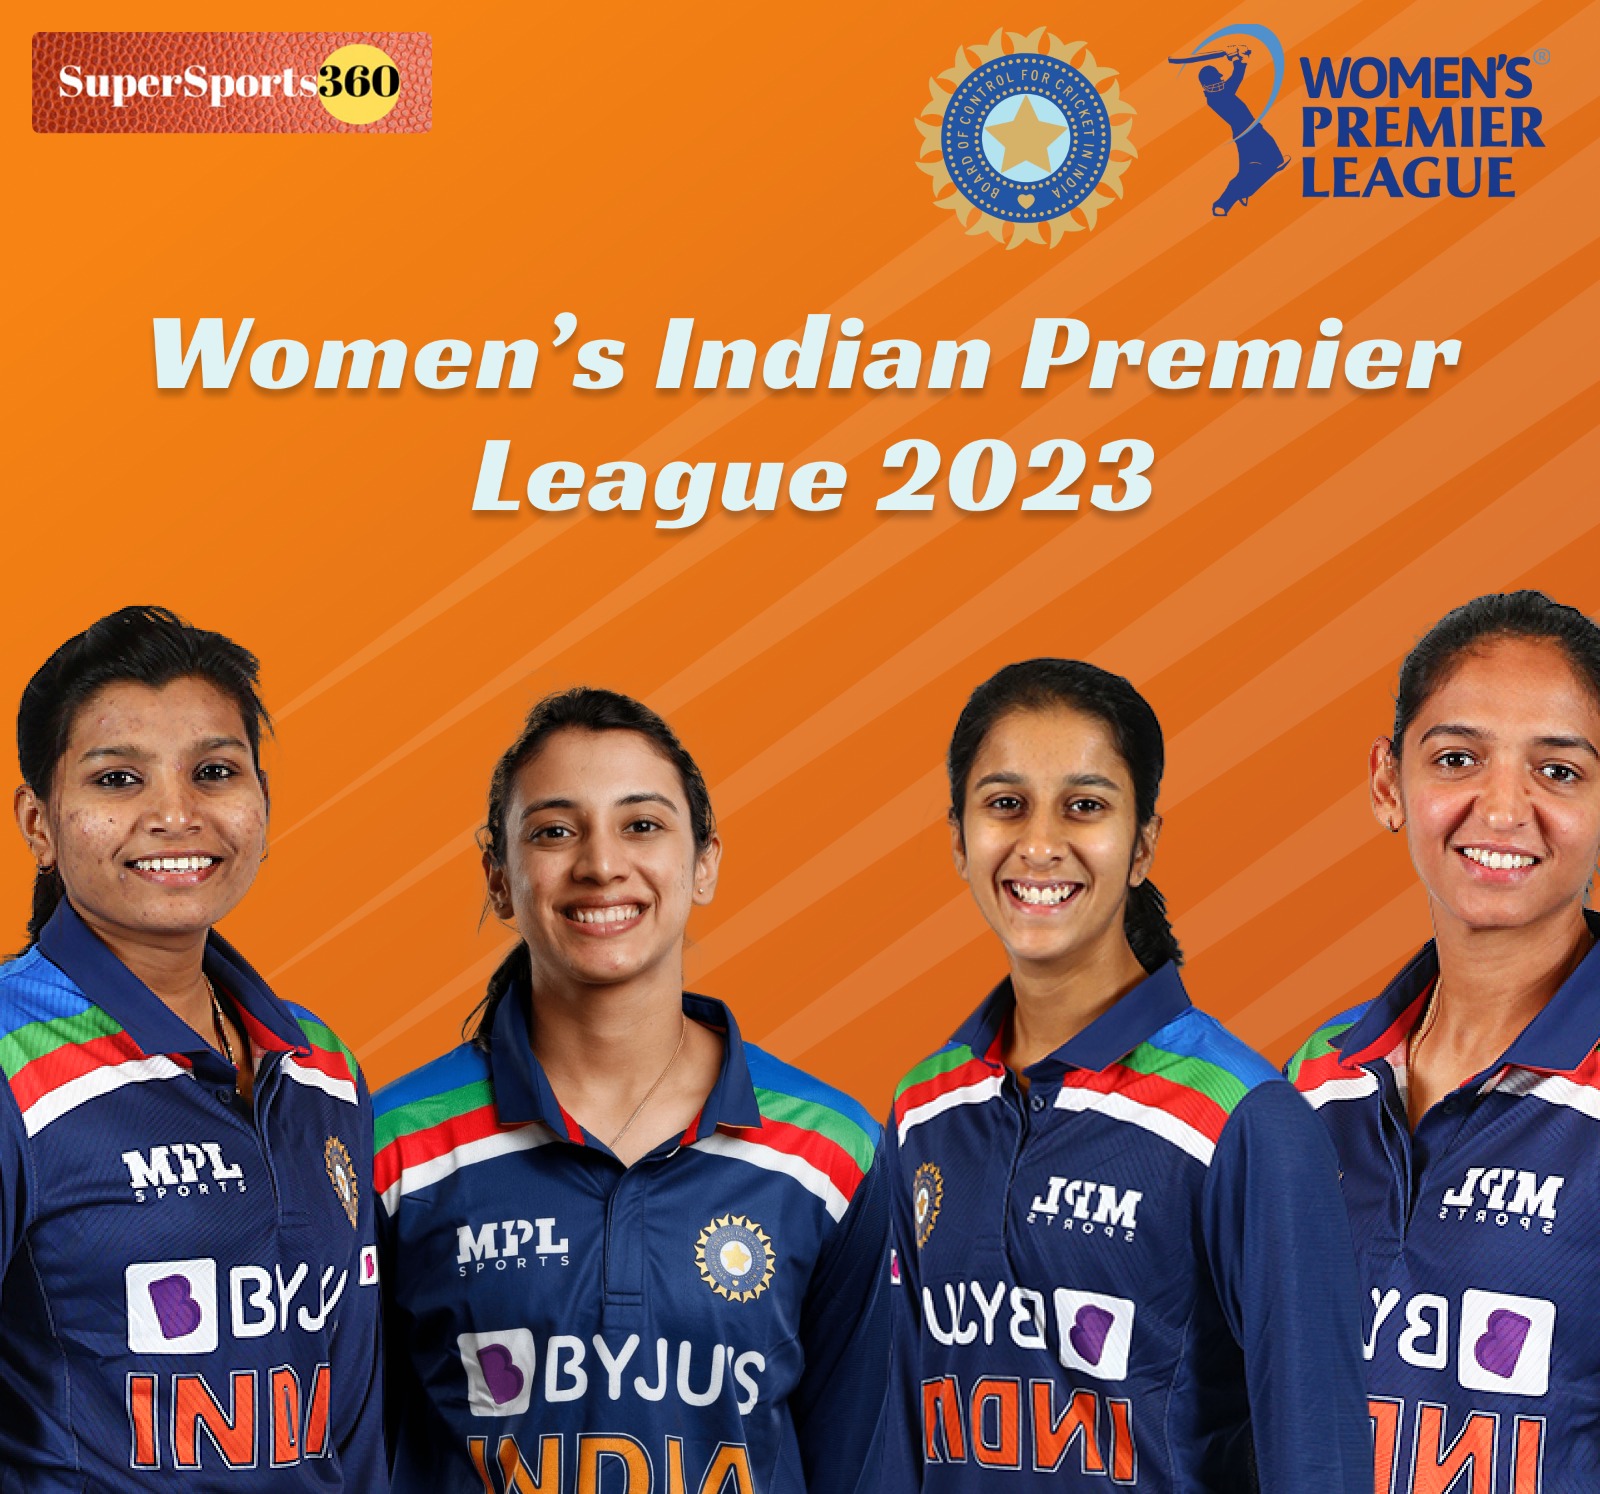 Women’s Indian Premier League 2023 - Super Sports 360